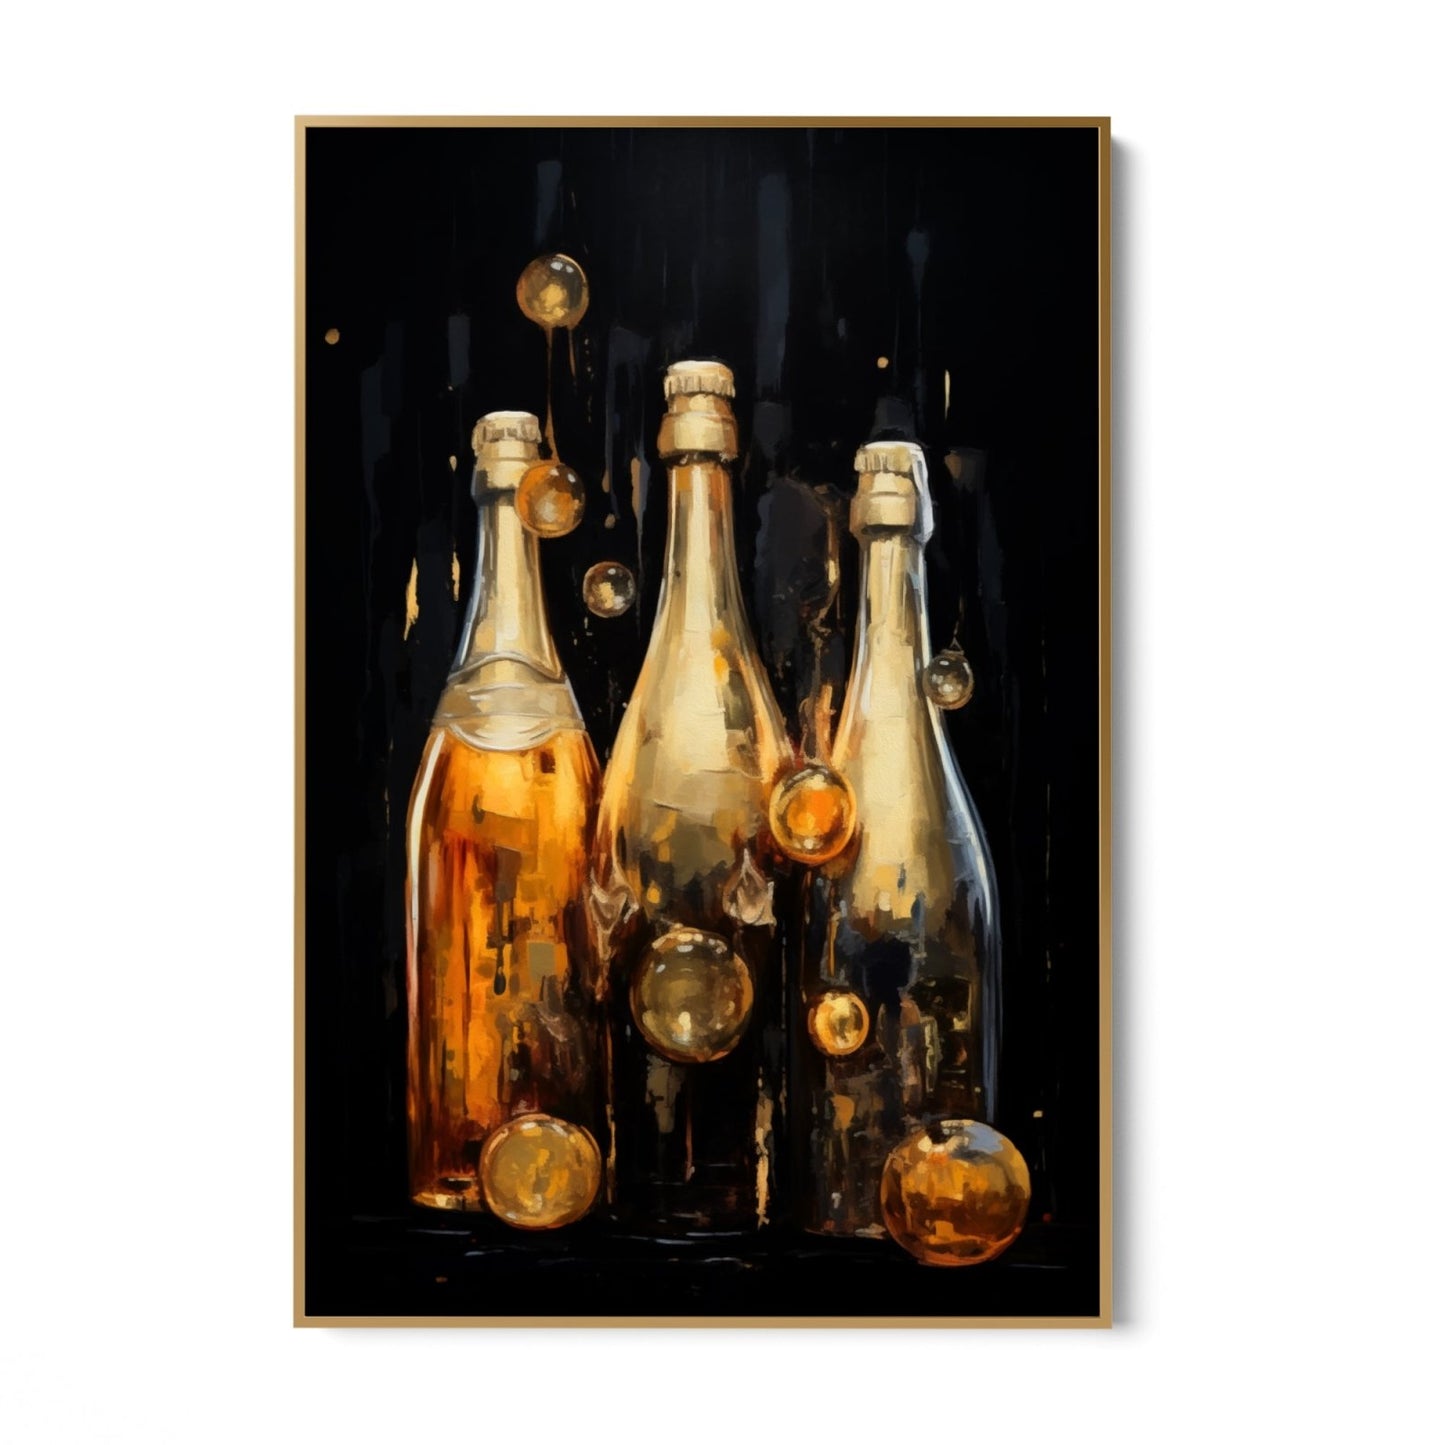 botellas de champán